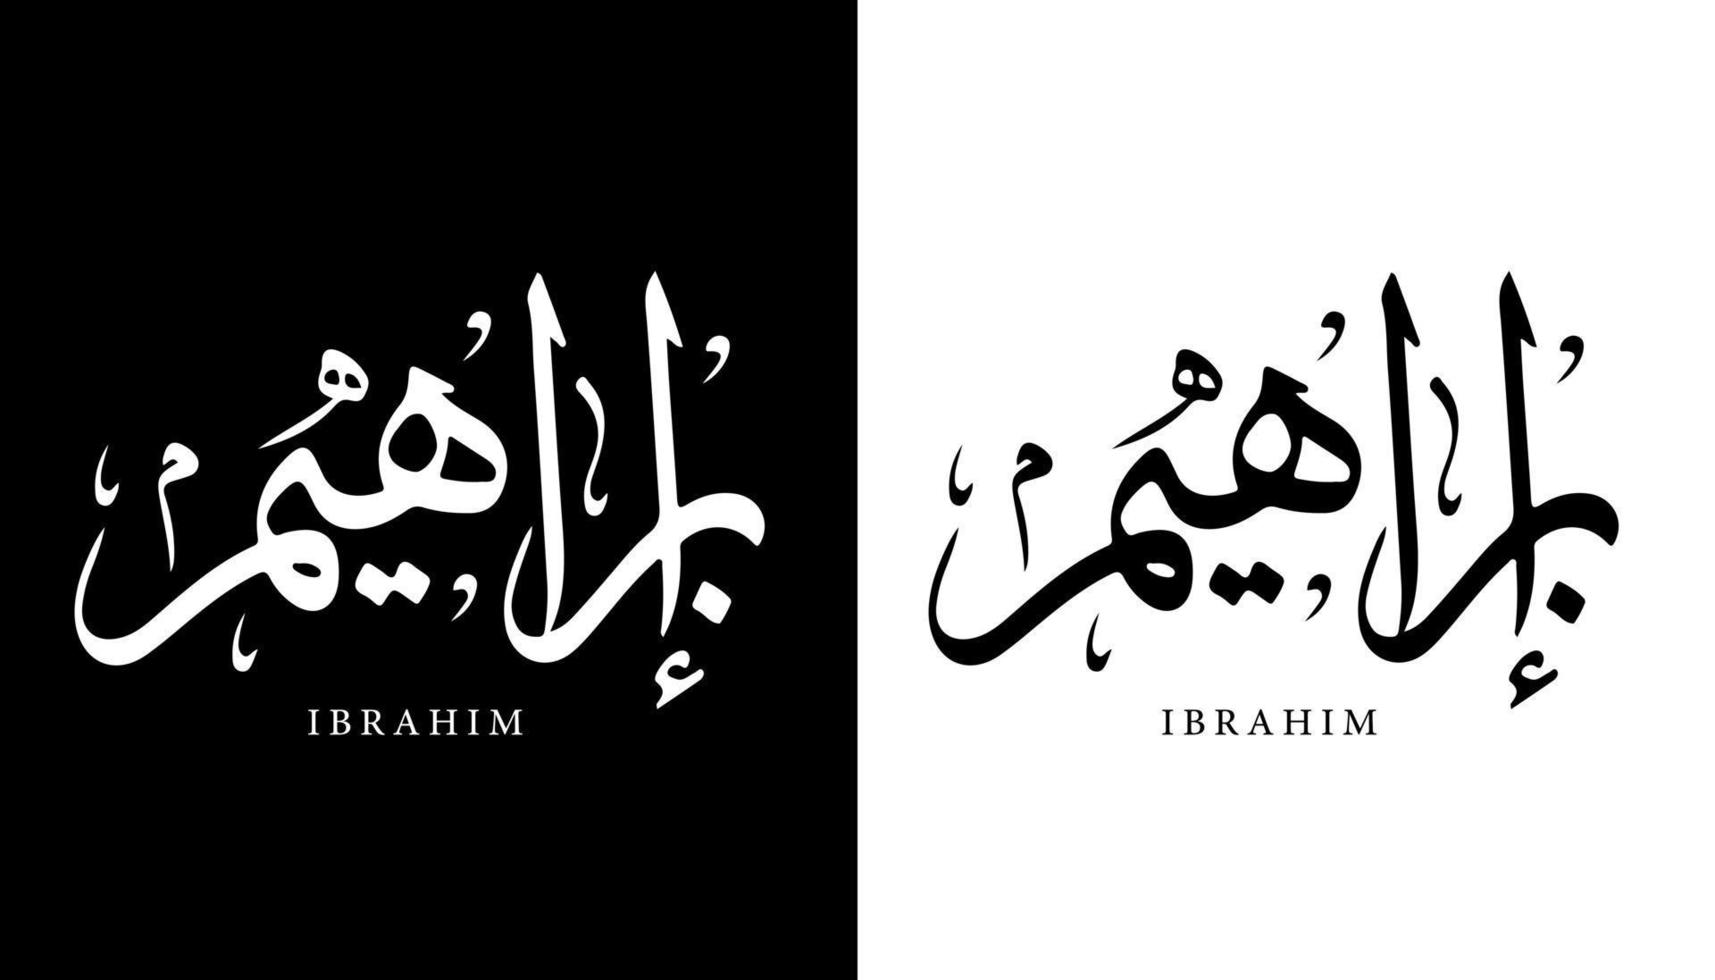 nome della calligrafia araba tradotto 'ibrahim' lettere arabe alfabeto font lettering logo islamico illustrazione vettoriale